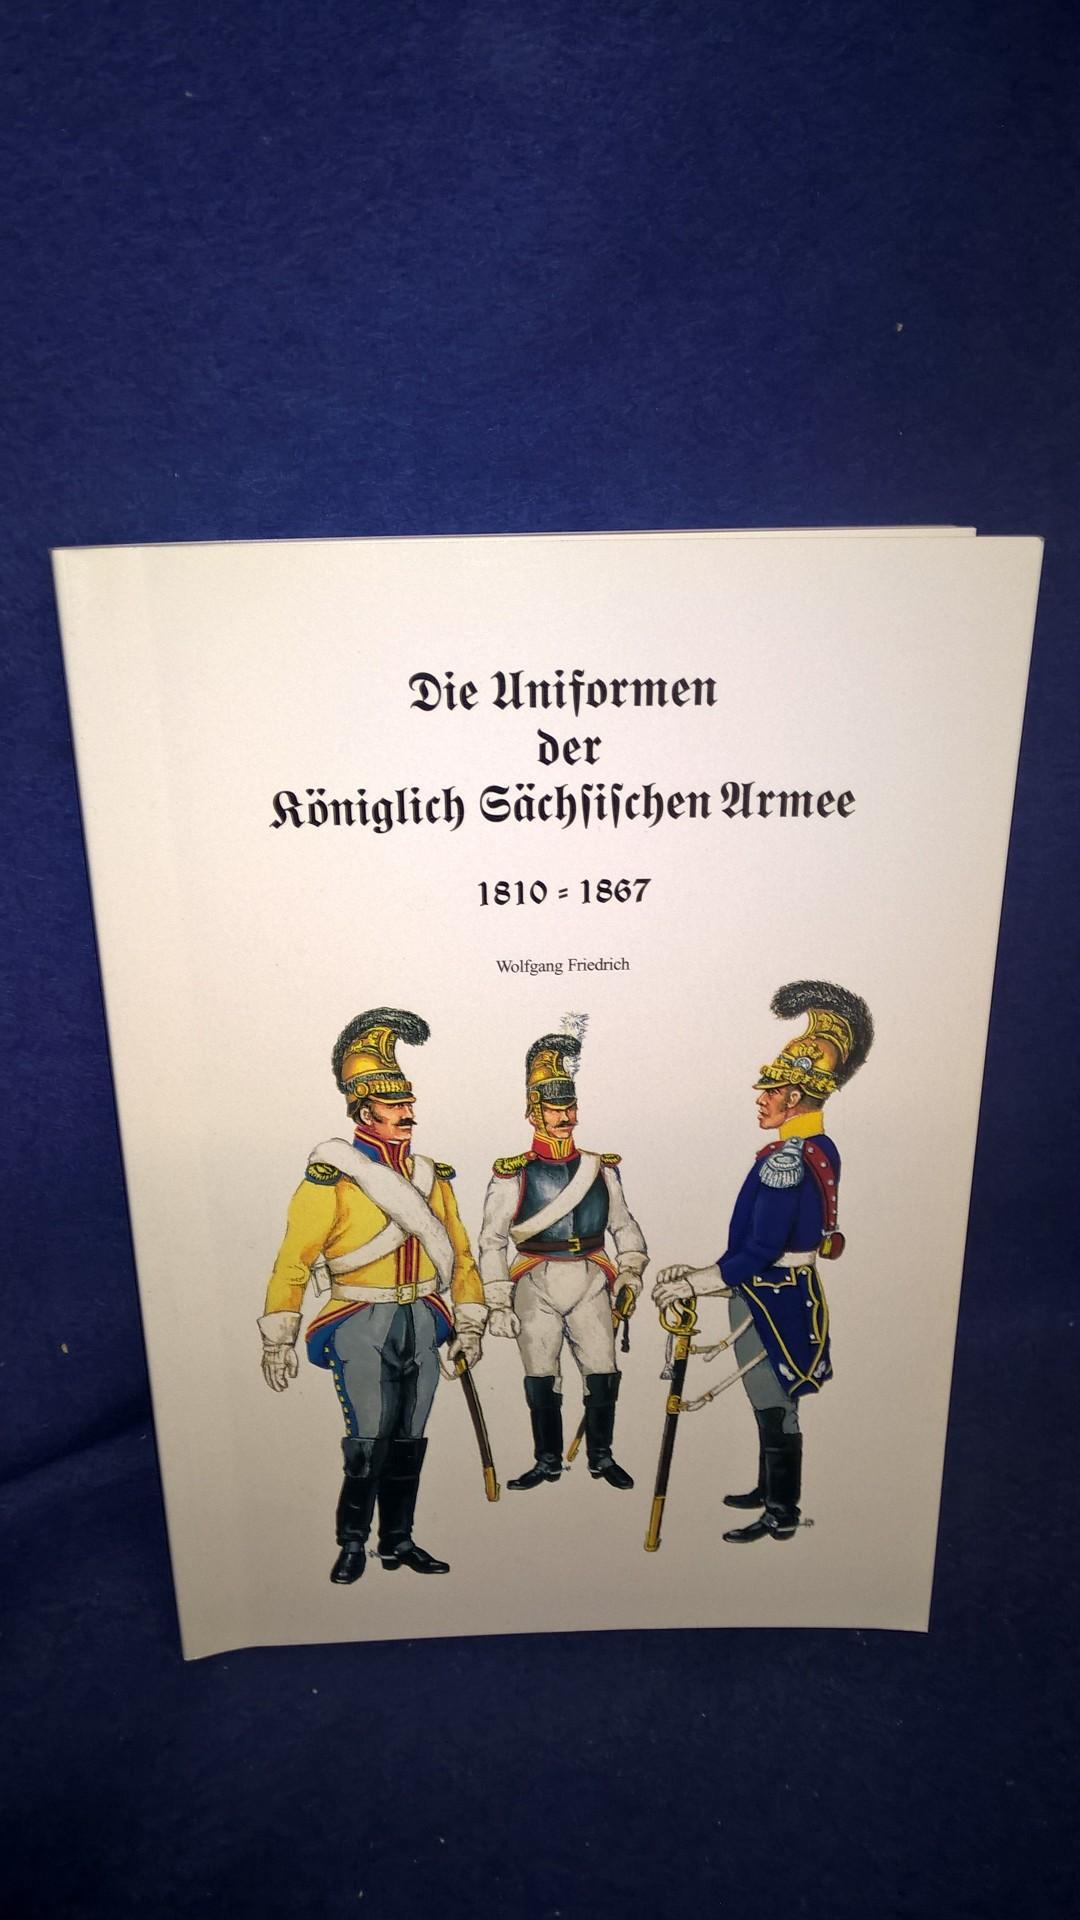 Die Uniformen der Königlich Sächsischen Armee 1810-1867.